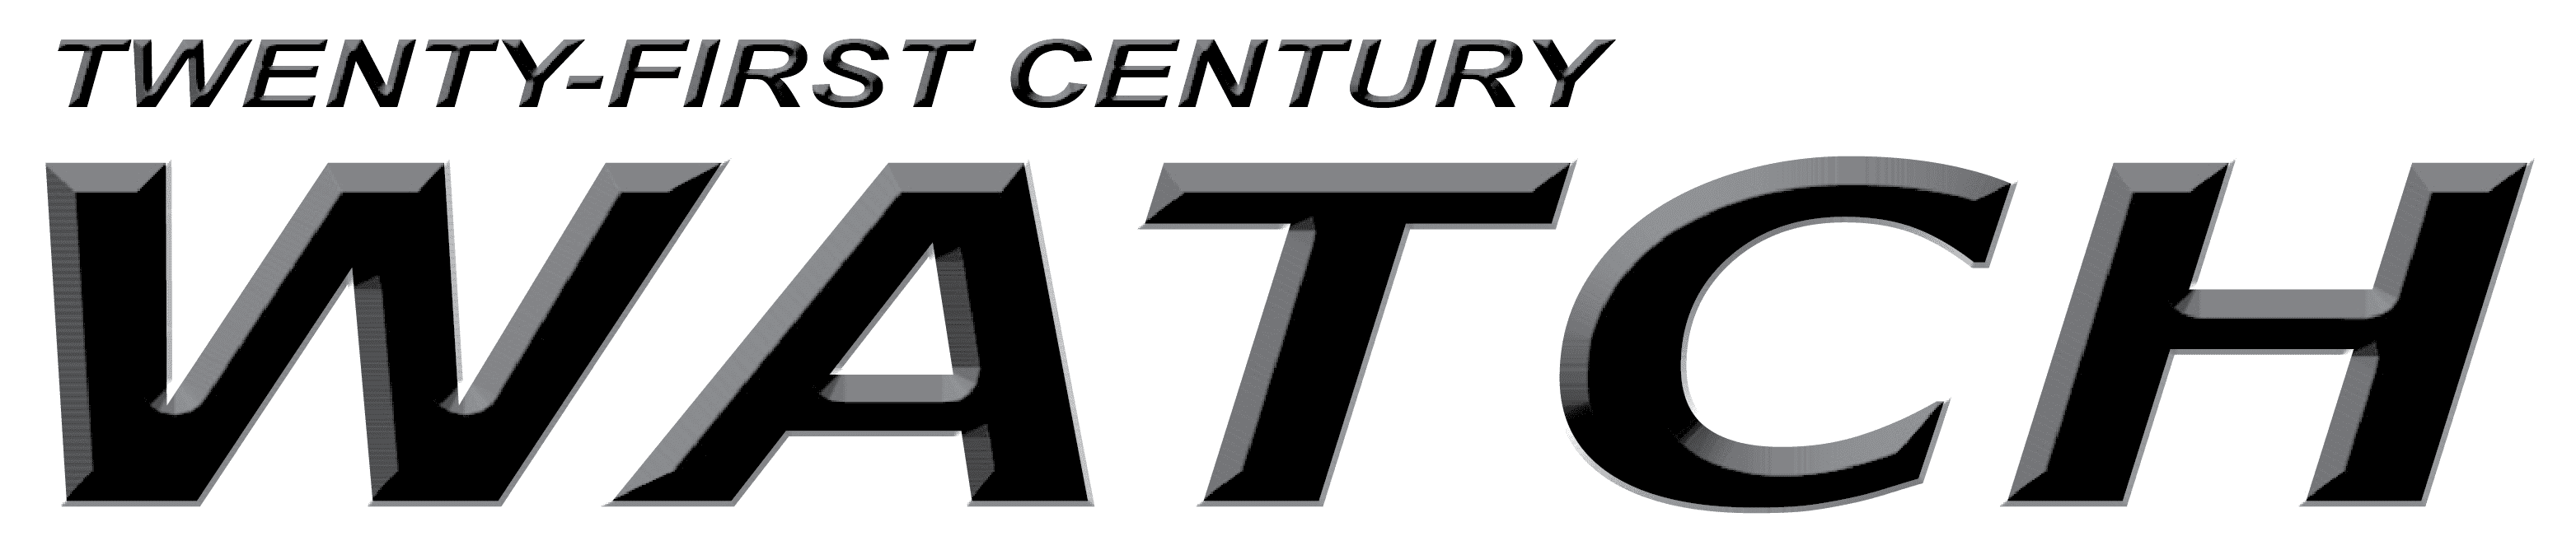 Twenty first century